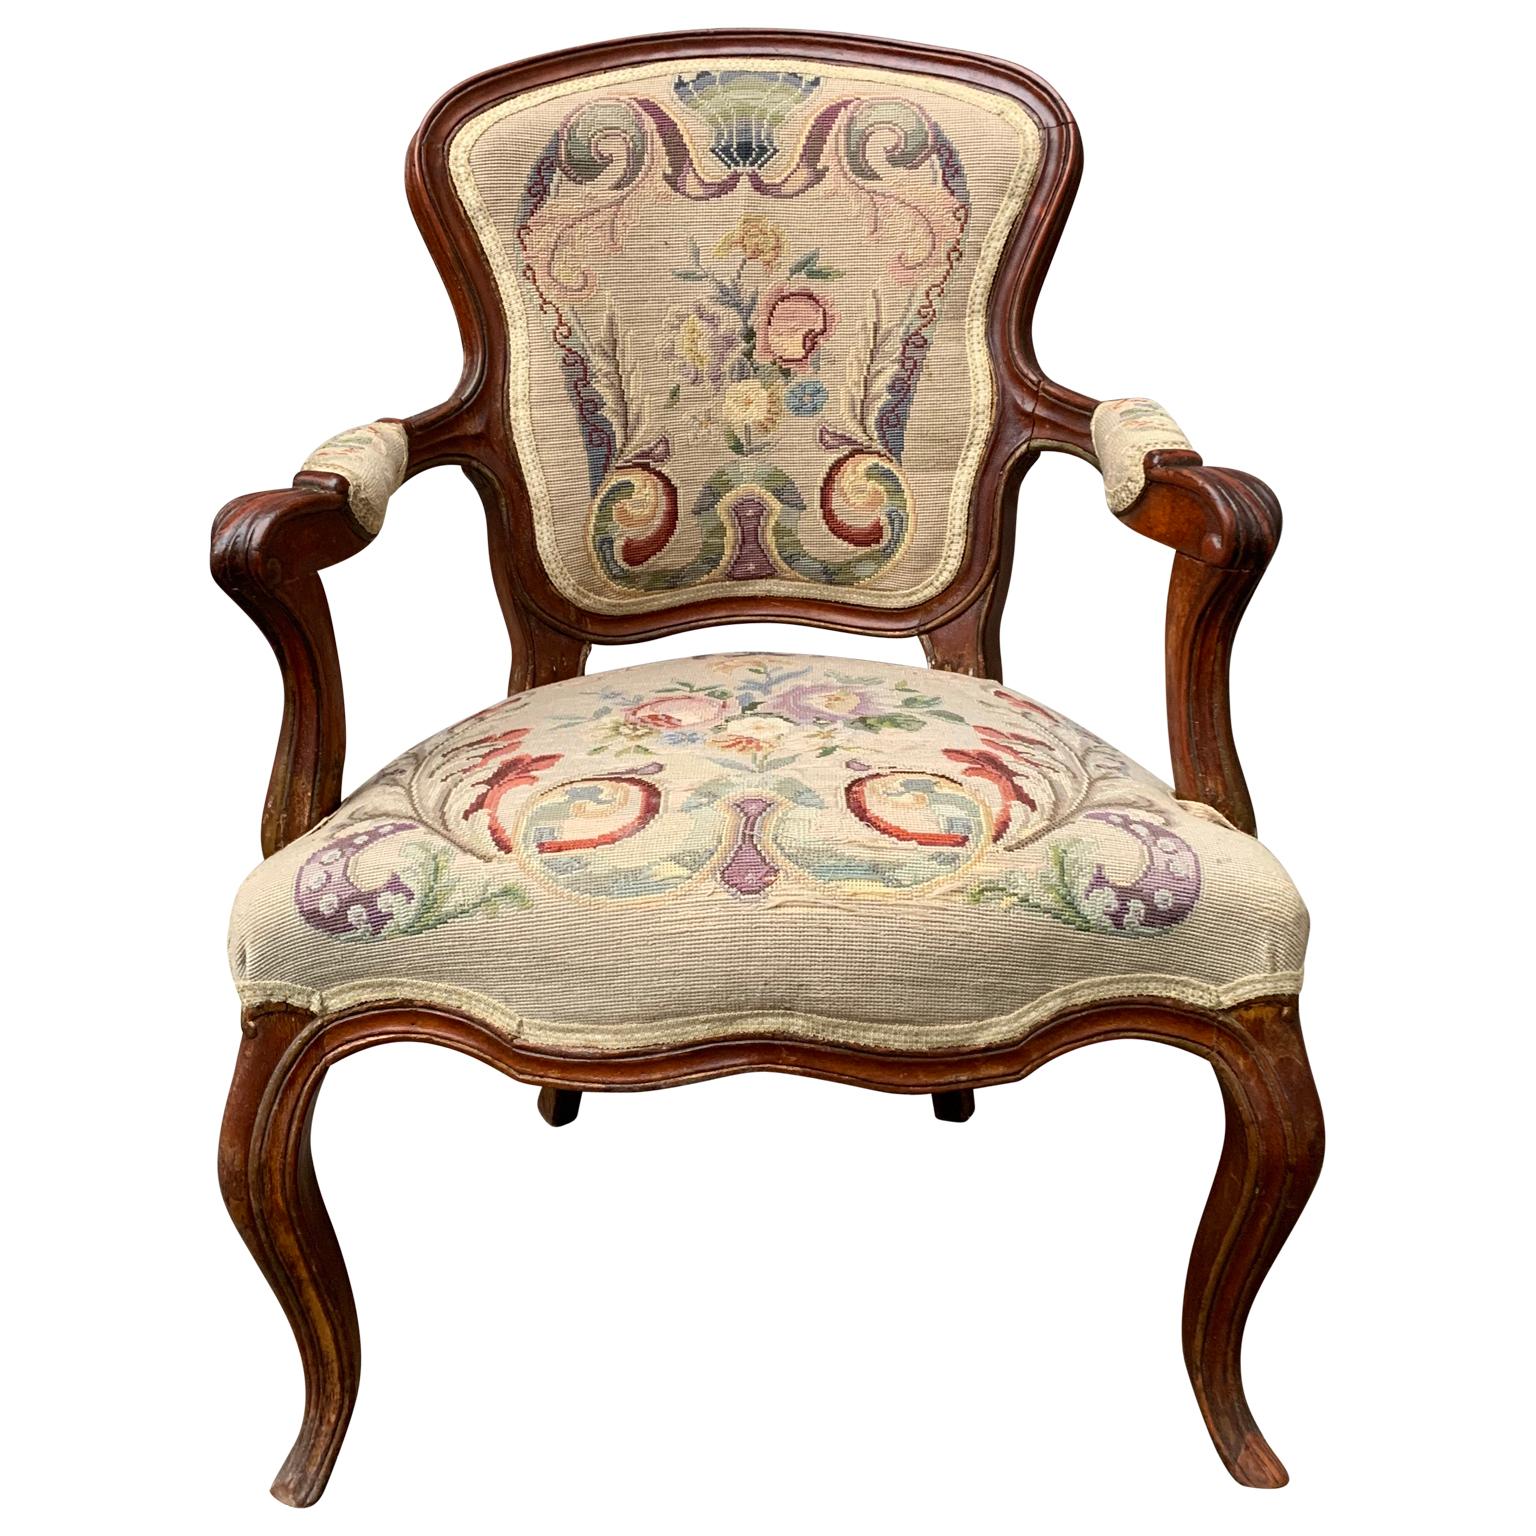 Un fauteuil rococo français du 18ème siècle à la patine vieillie plus foncée. Fauteuil à bras ouvert sculpté à la main avec un tissu tissé à la main.

Veuillez noter que ce fauteuil est situé à Halmstad en Suède.
100 EUR de livraison dans la plupart